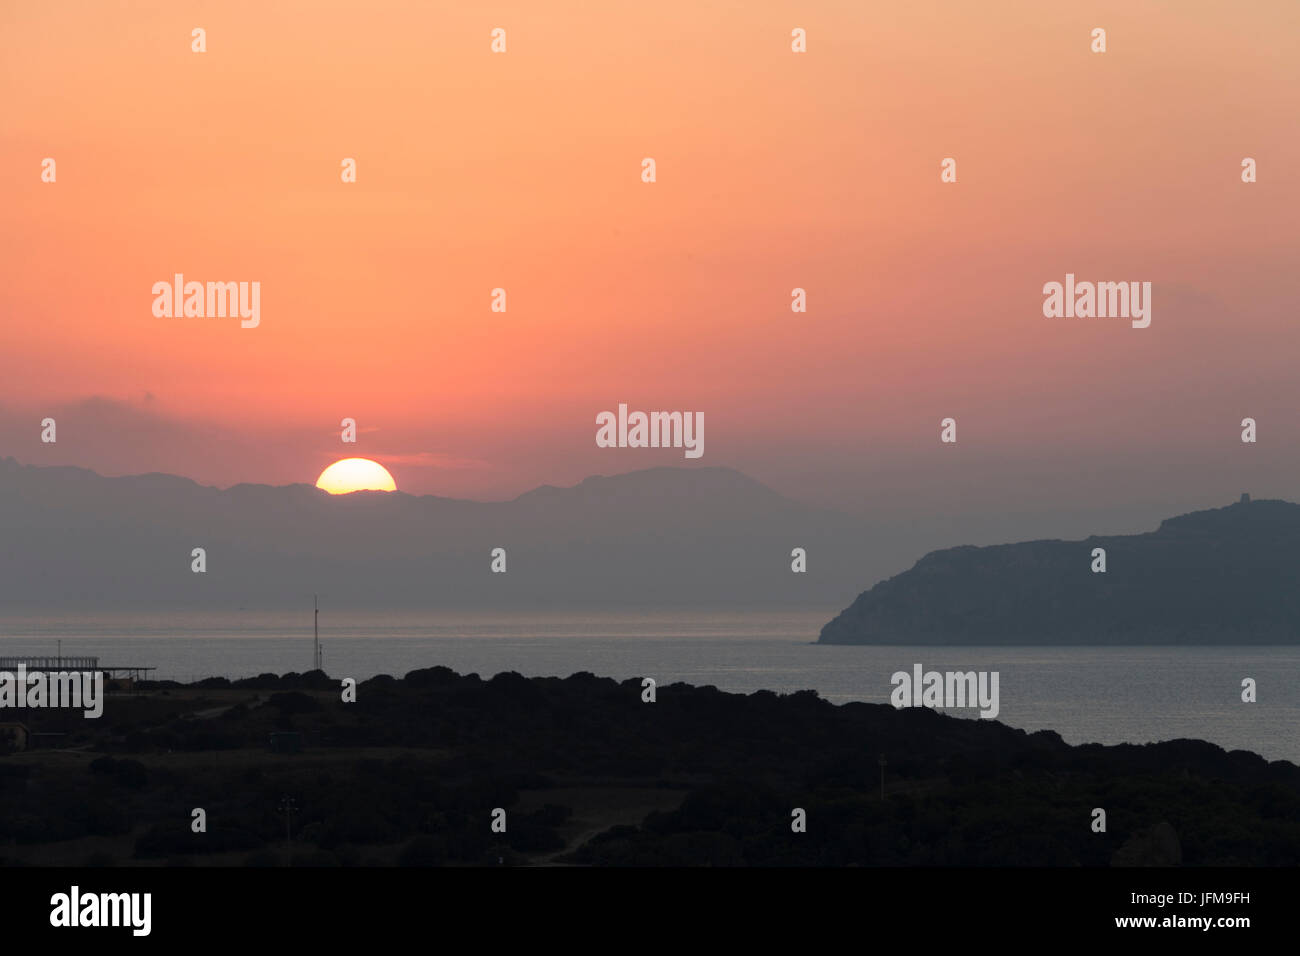 Sonnenuntergang über der Bucht und den Klippen von Porto Giunco Villasimius Cagliari Sardinien Italien Europa Stockfoto